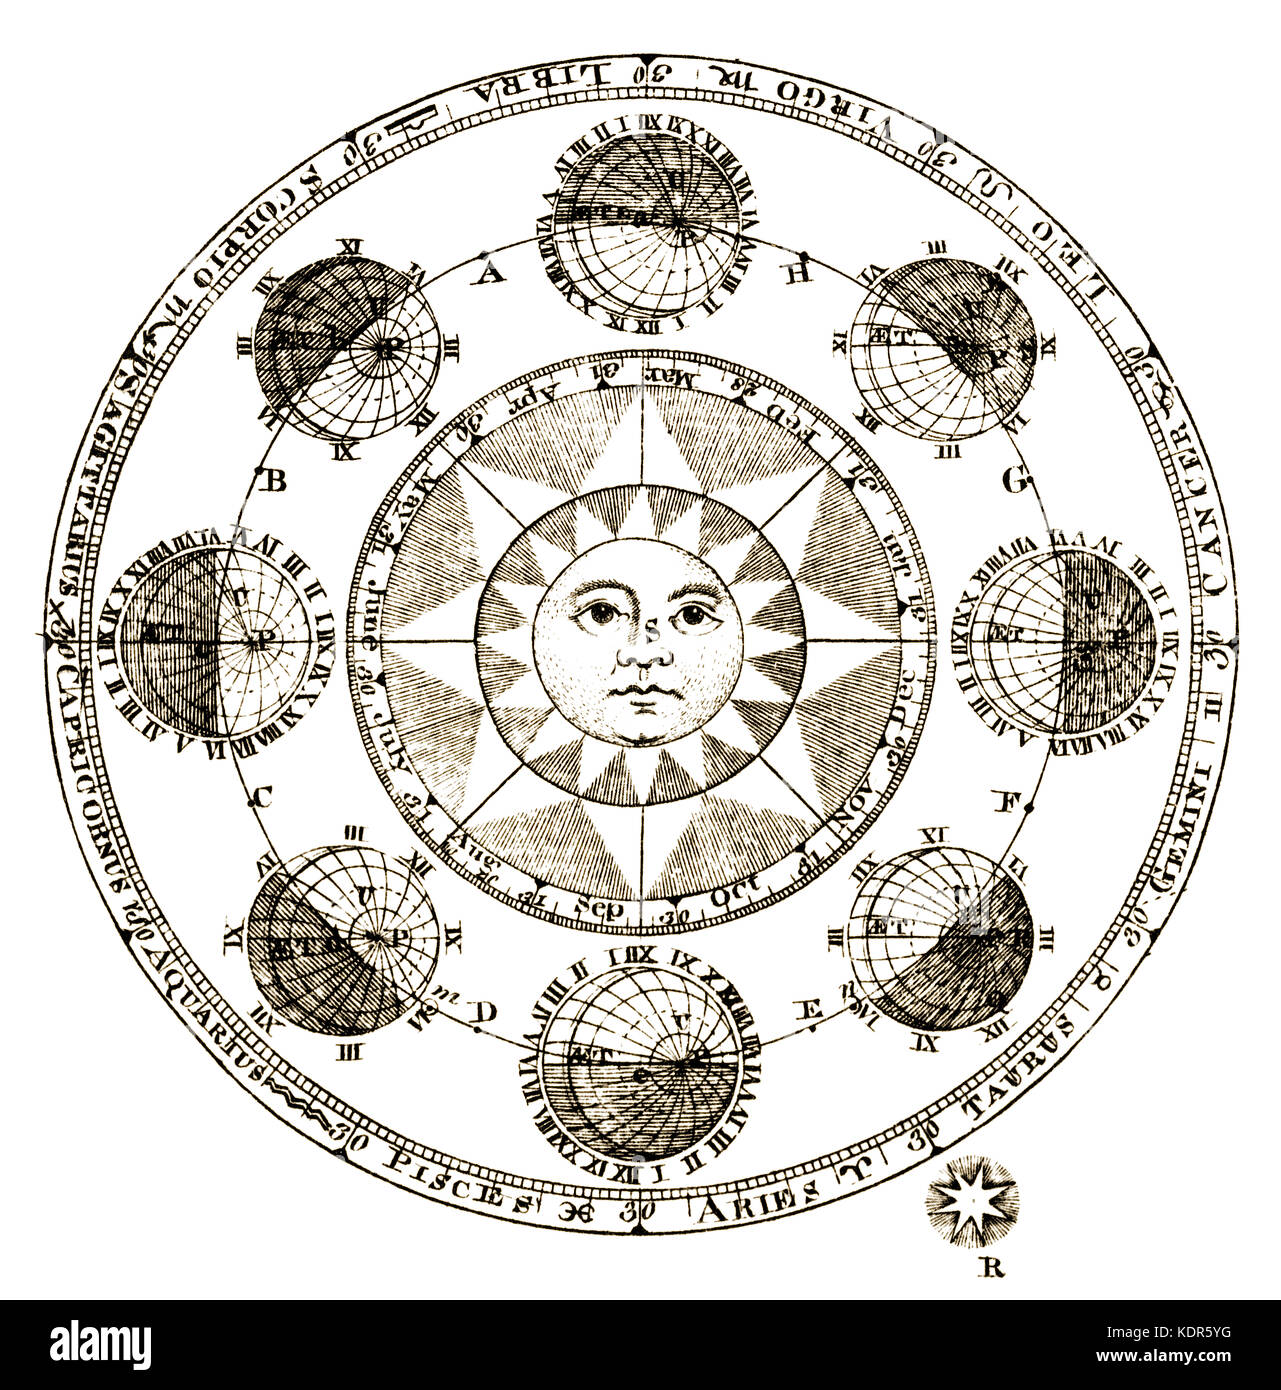 Vintage 1771 gravure d'astronomie montrant des éclipses de lunes de Jupiter Banque D'Images